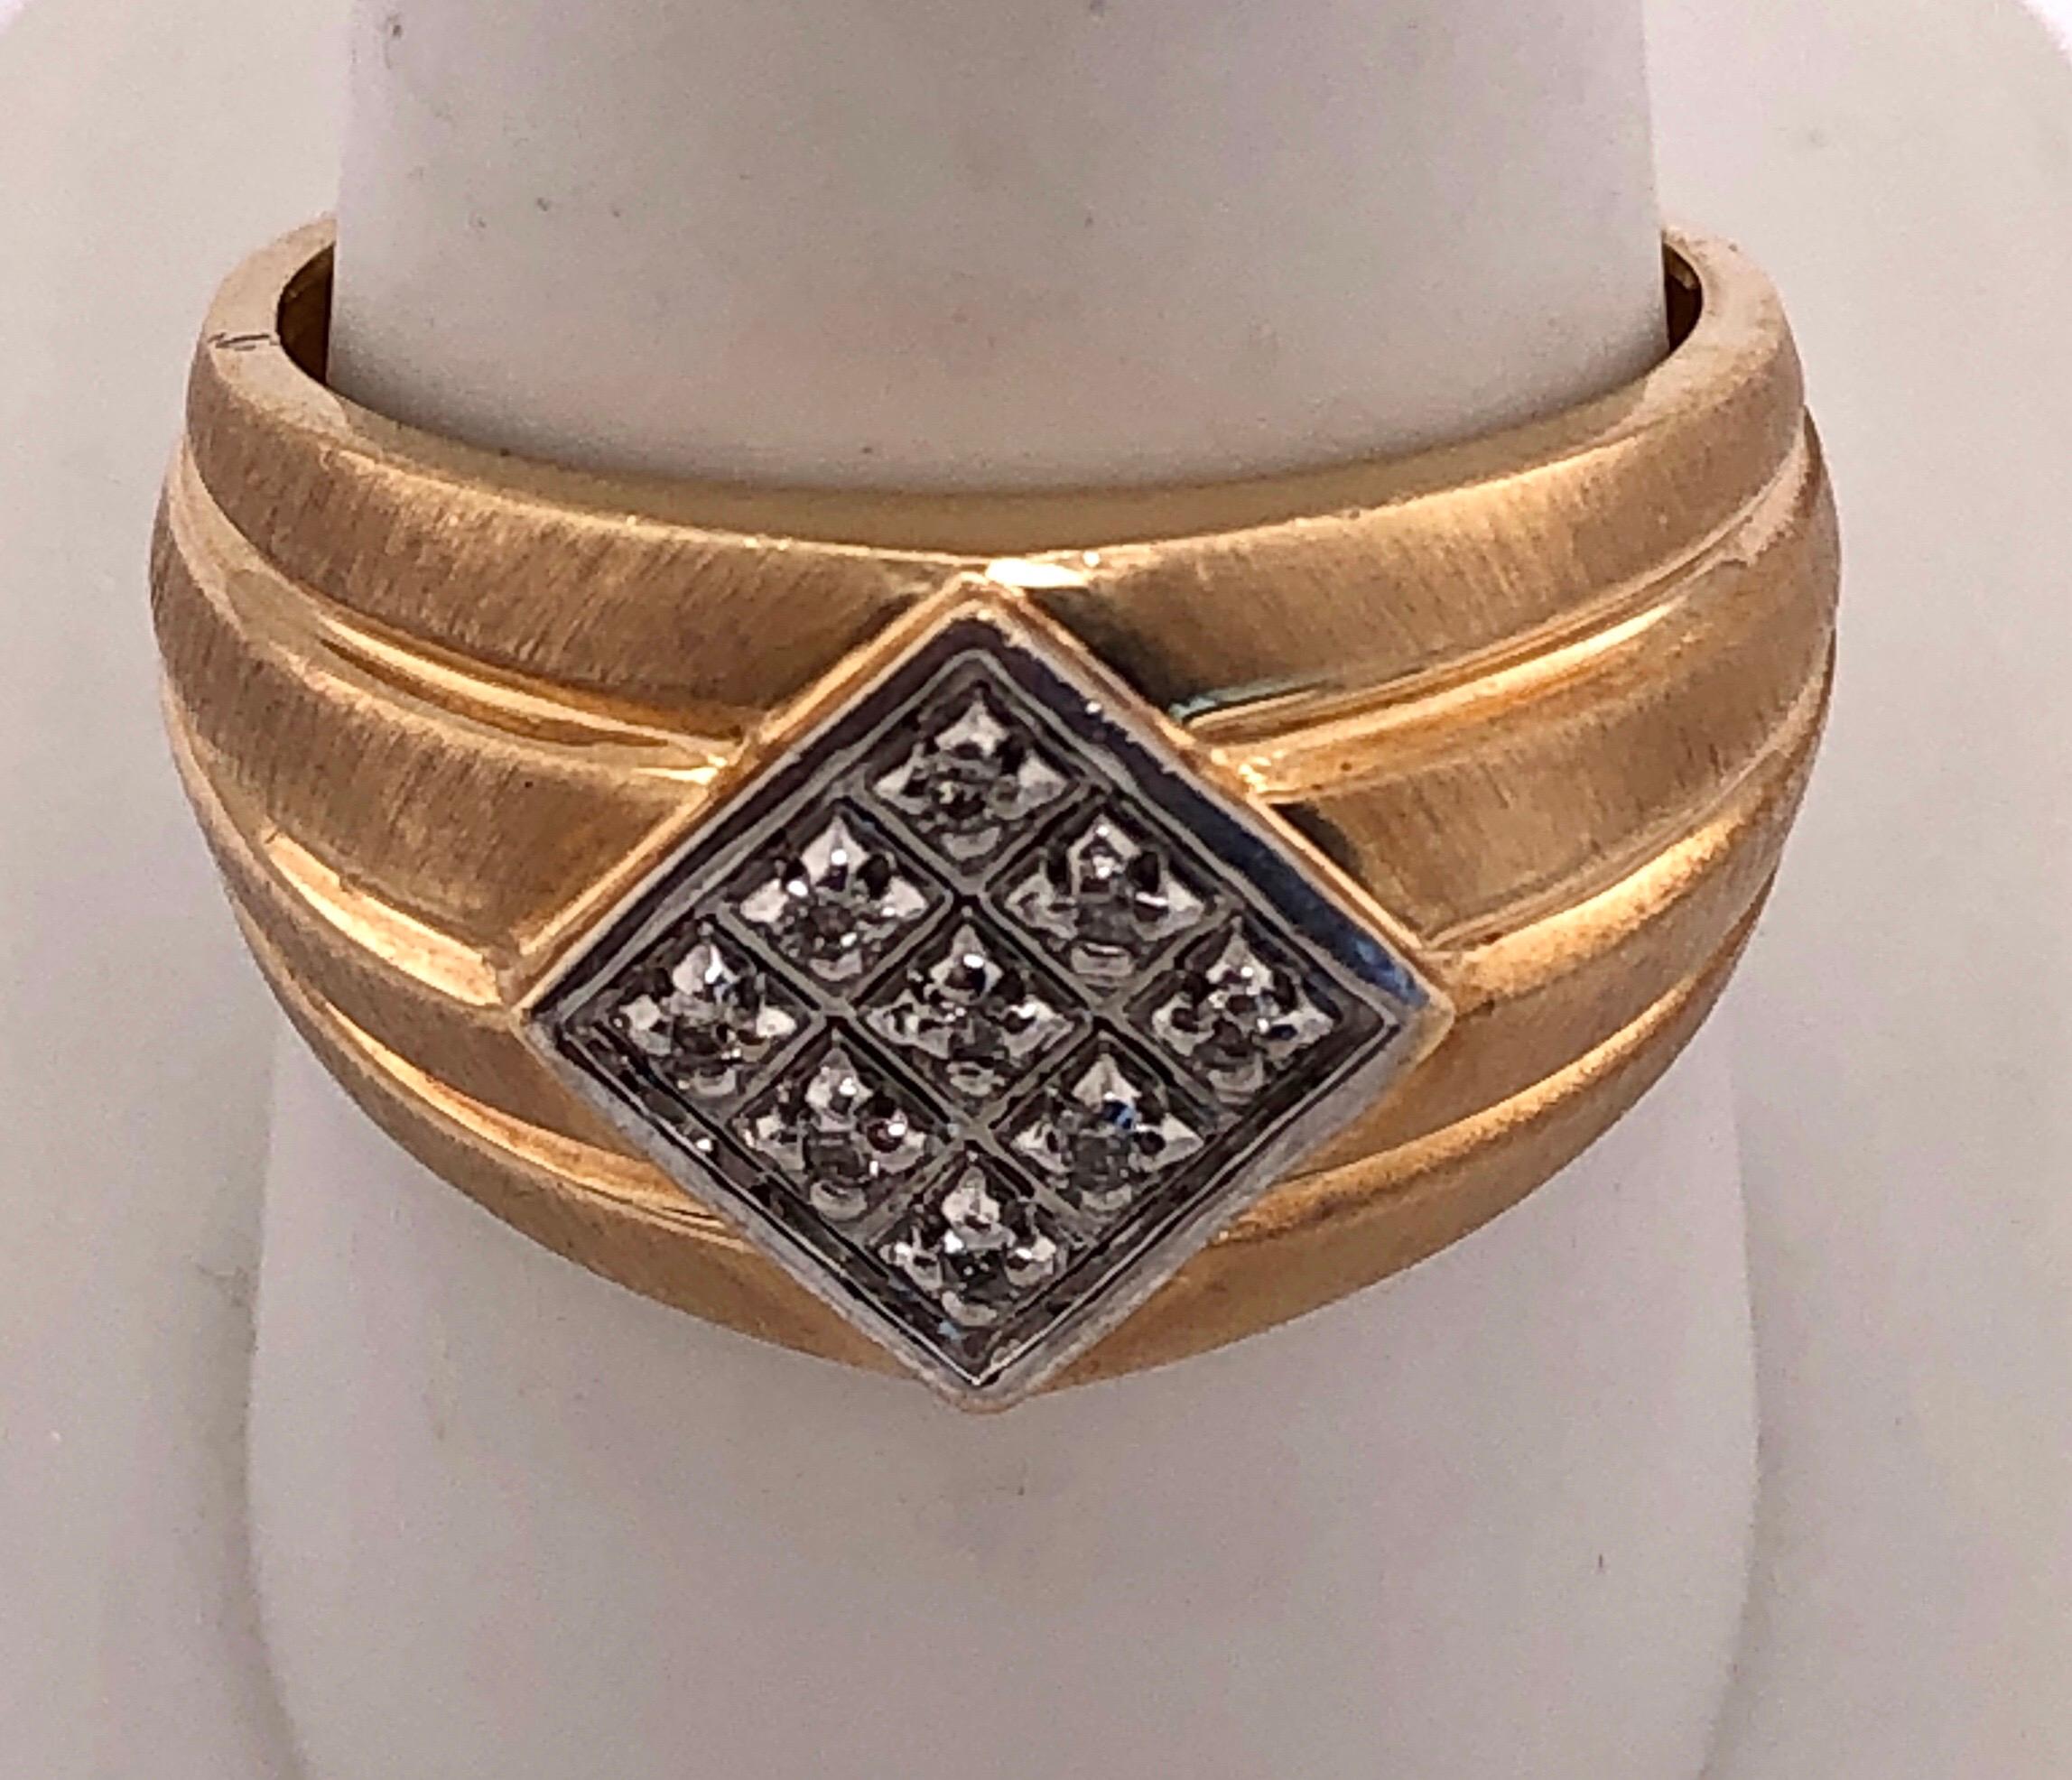 zeitgenössischer Ring aus 14Kt Gelbgold mit Diamanten
Größe 9,5 5,40 Gramm Gesamtgewicht.